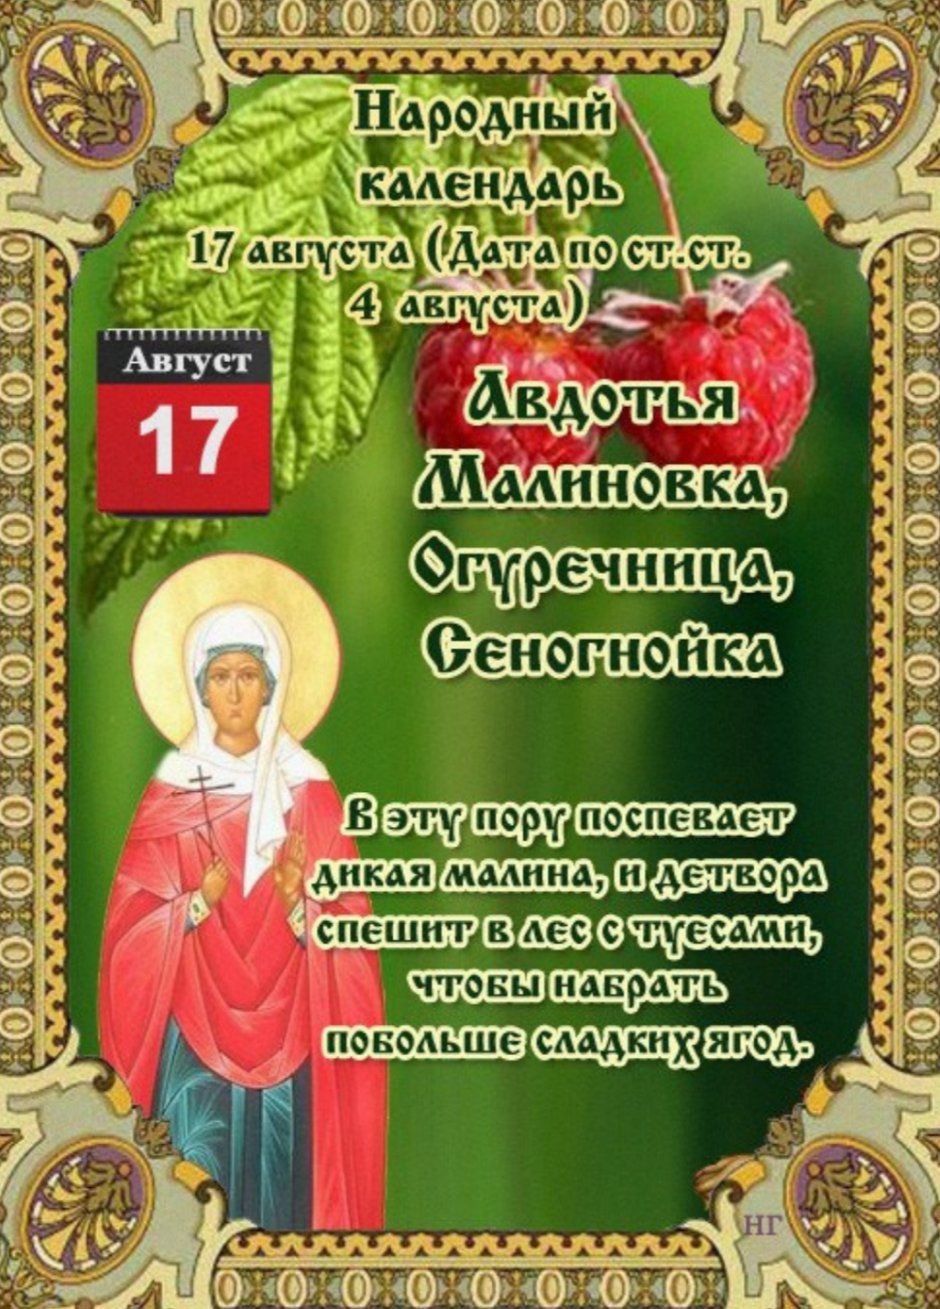 17 Августа народный календарь Авдотья Малиновка